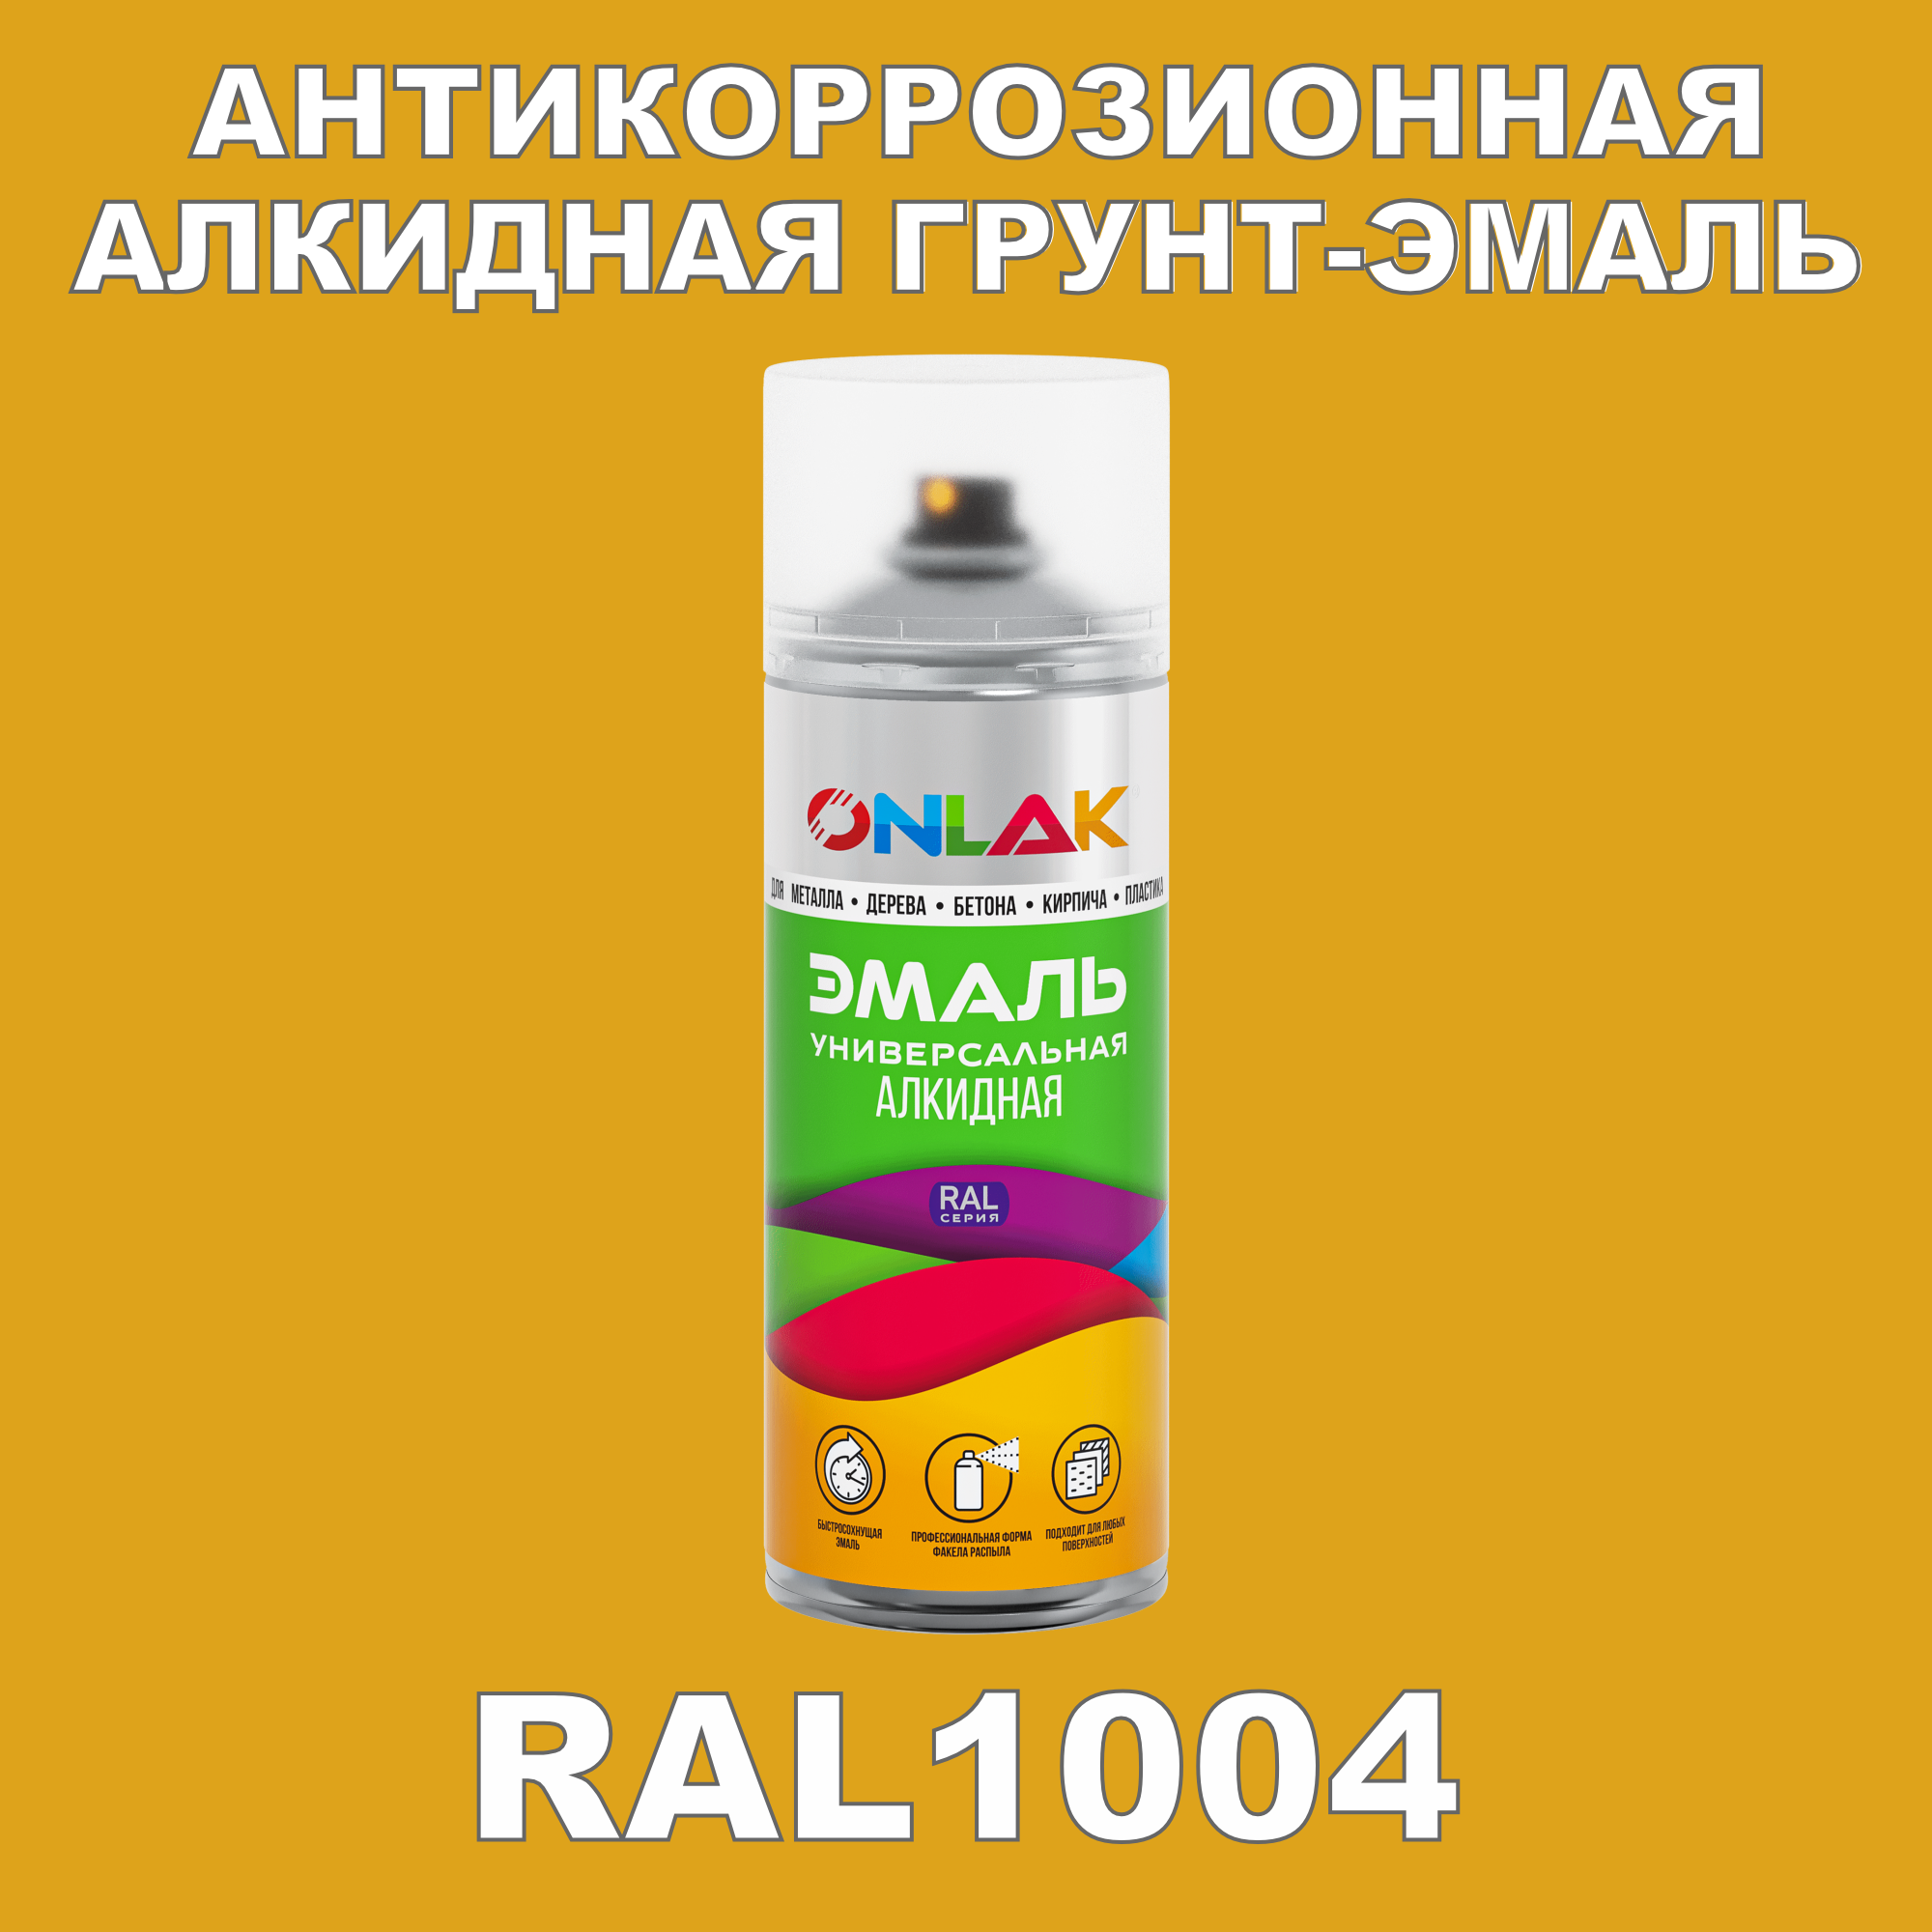 Антикоррозионная грунт-эмаль ONLAK RAL1004 полуматовая для металла и защиты от ржавчины